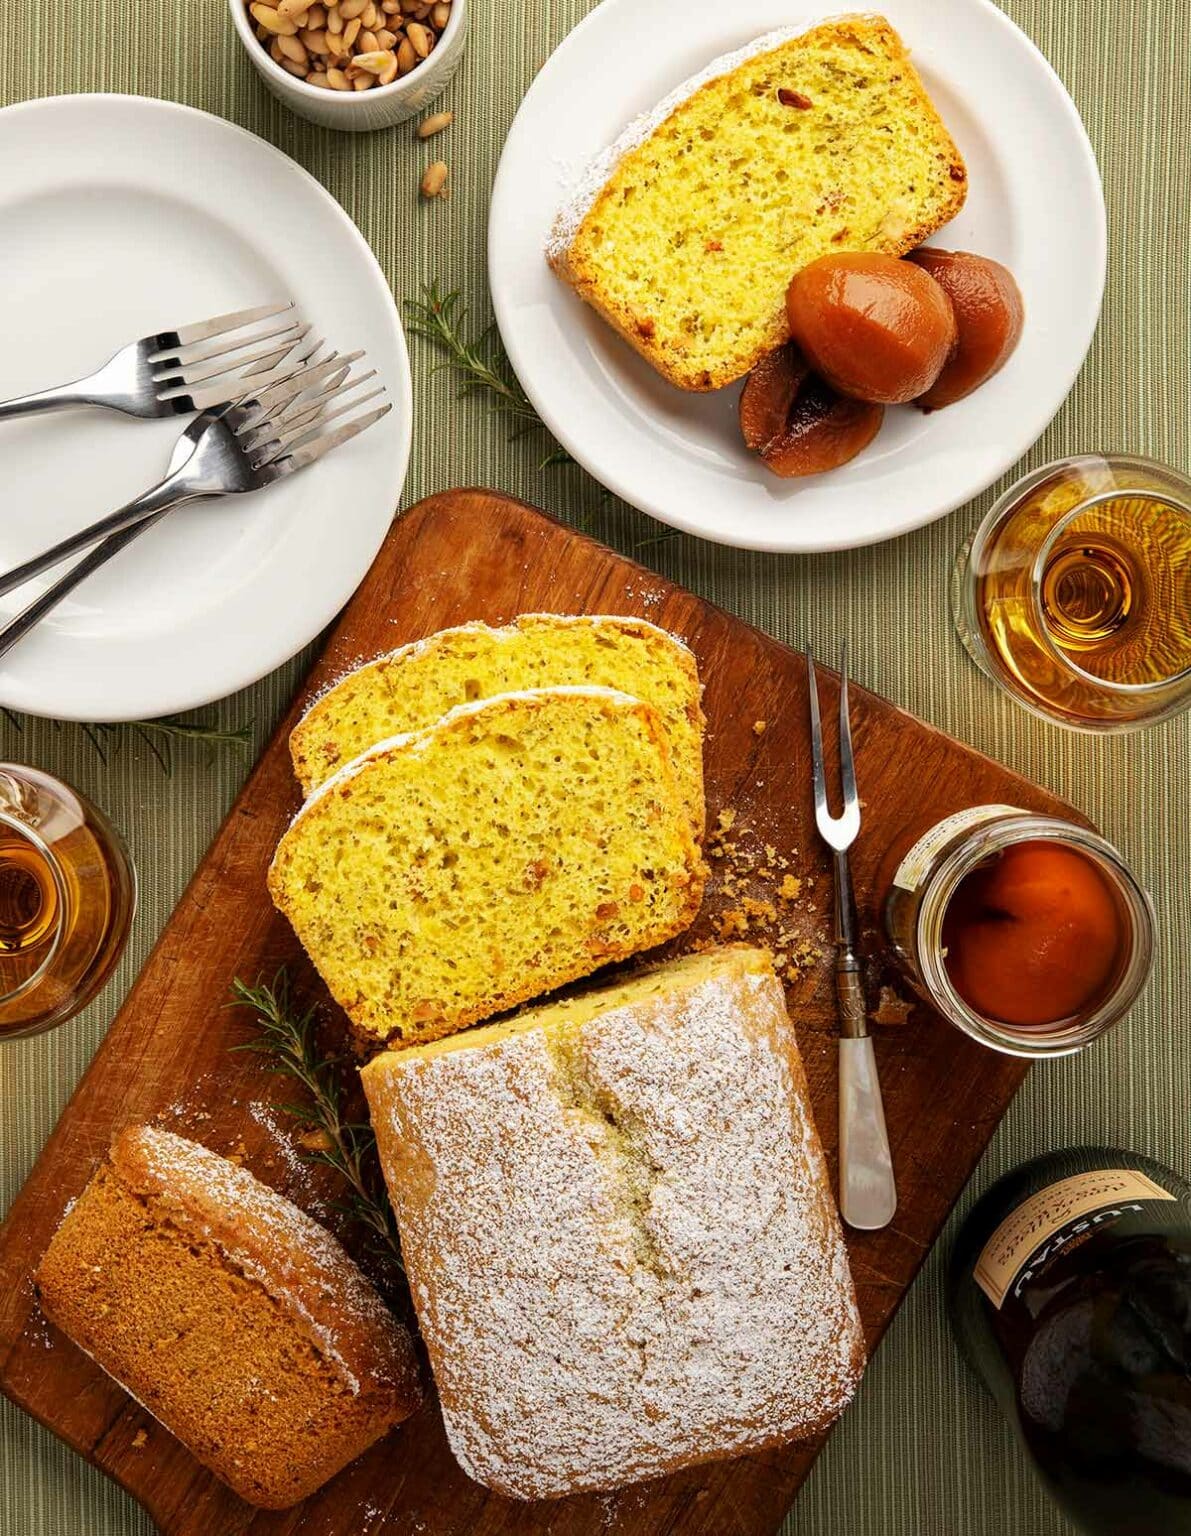 rosemary-olive-oil-cake-full-